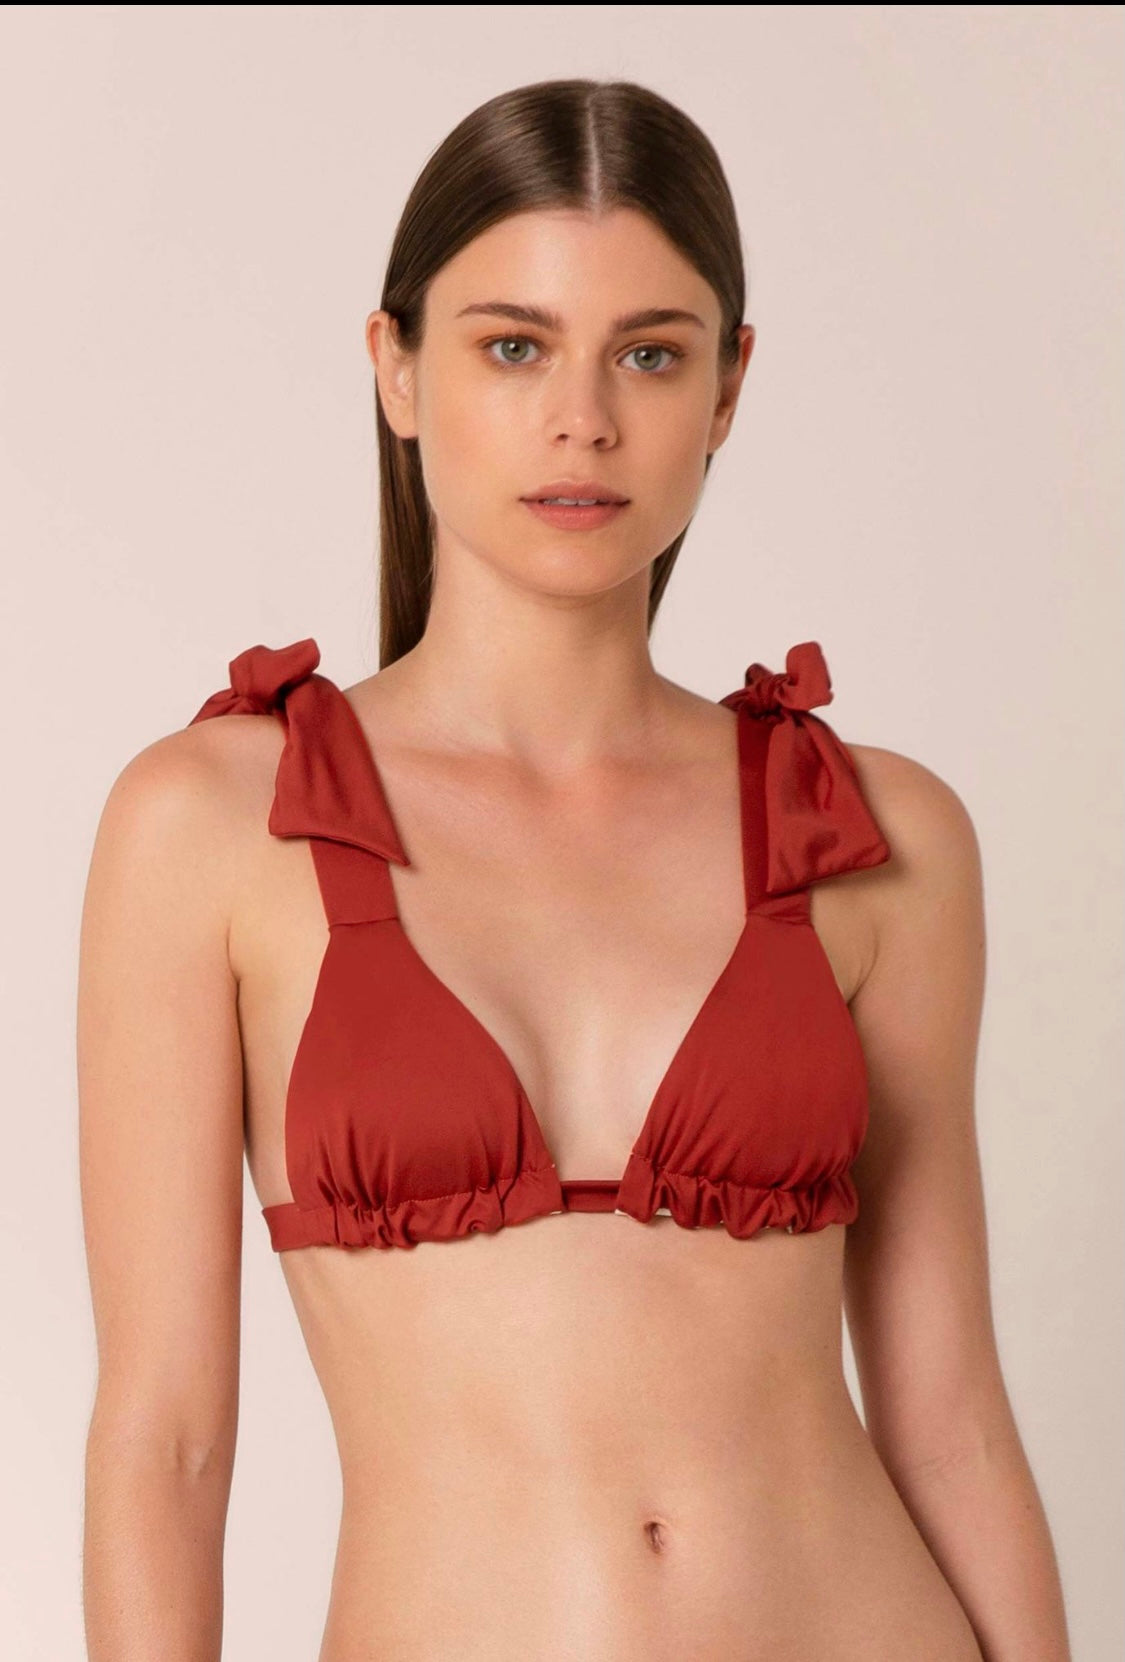 Red bikini top